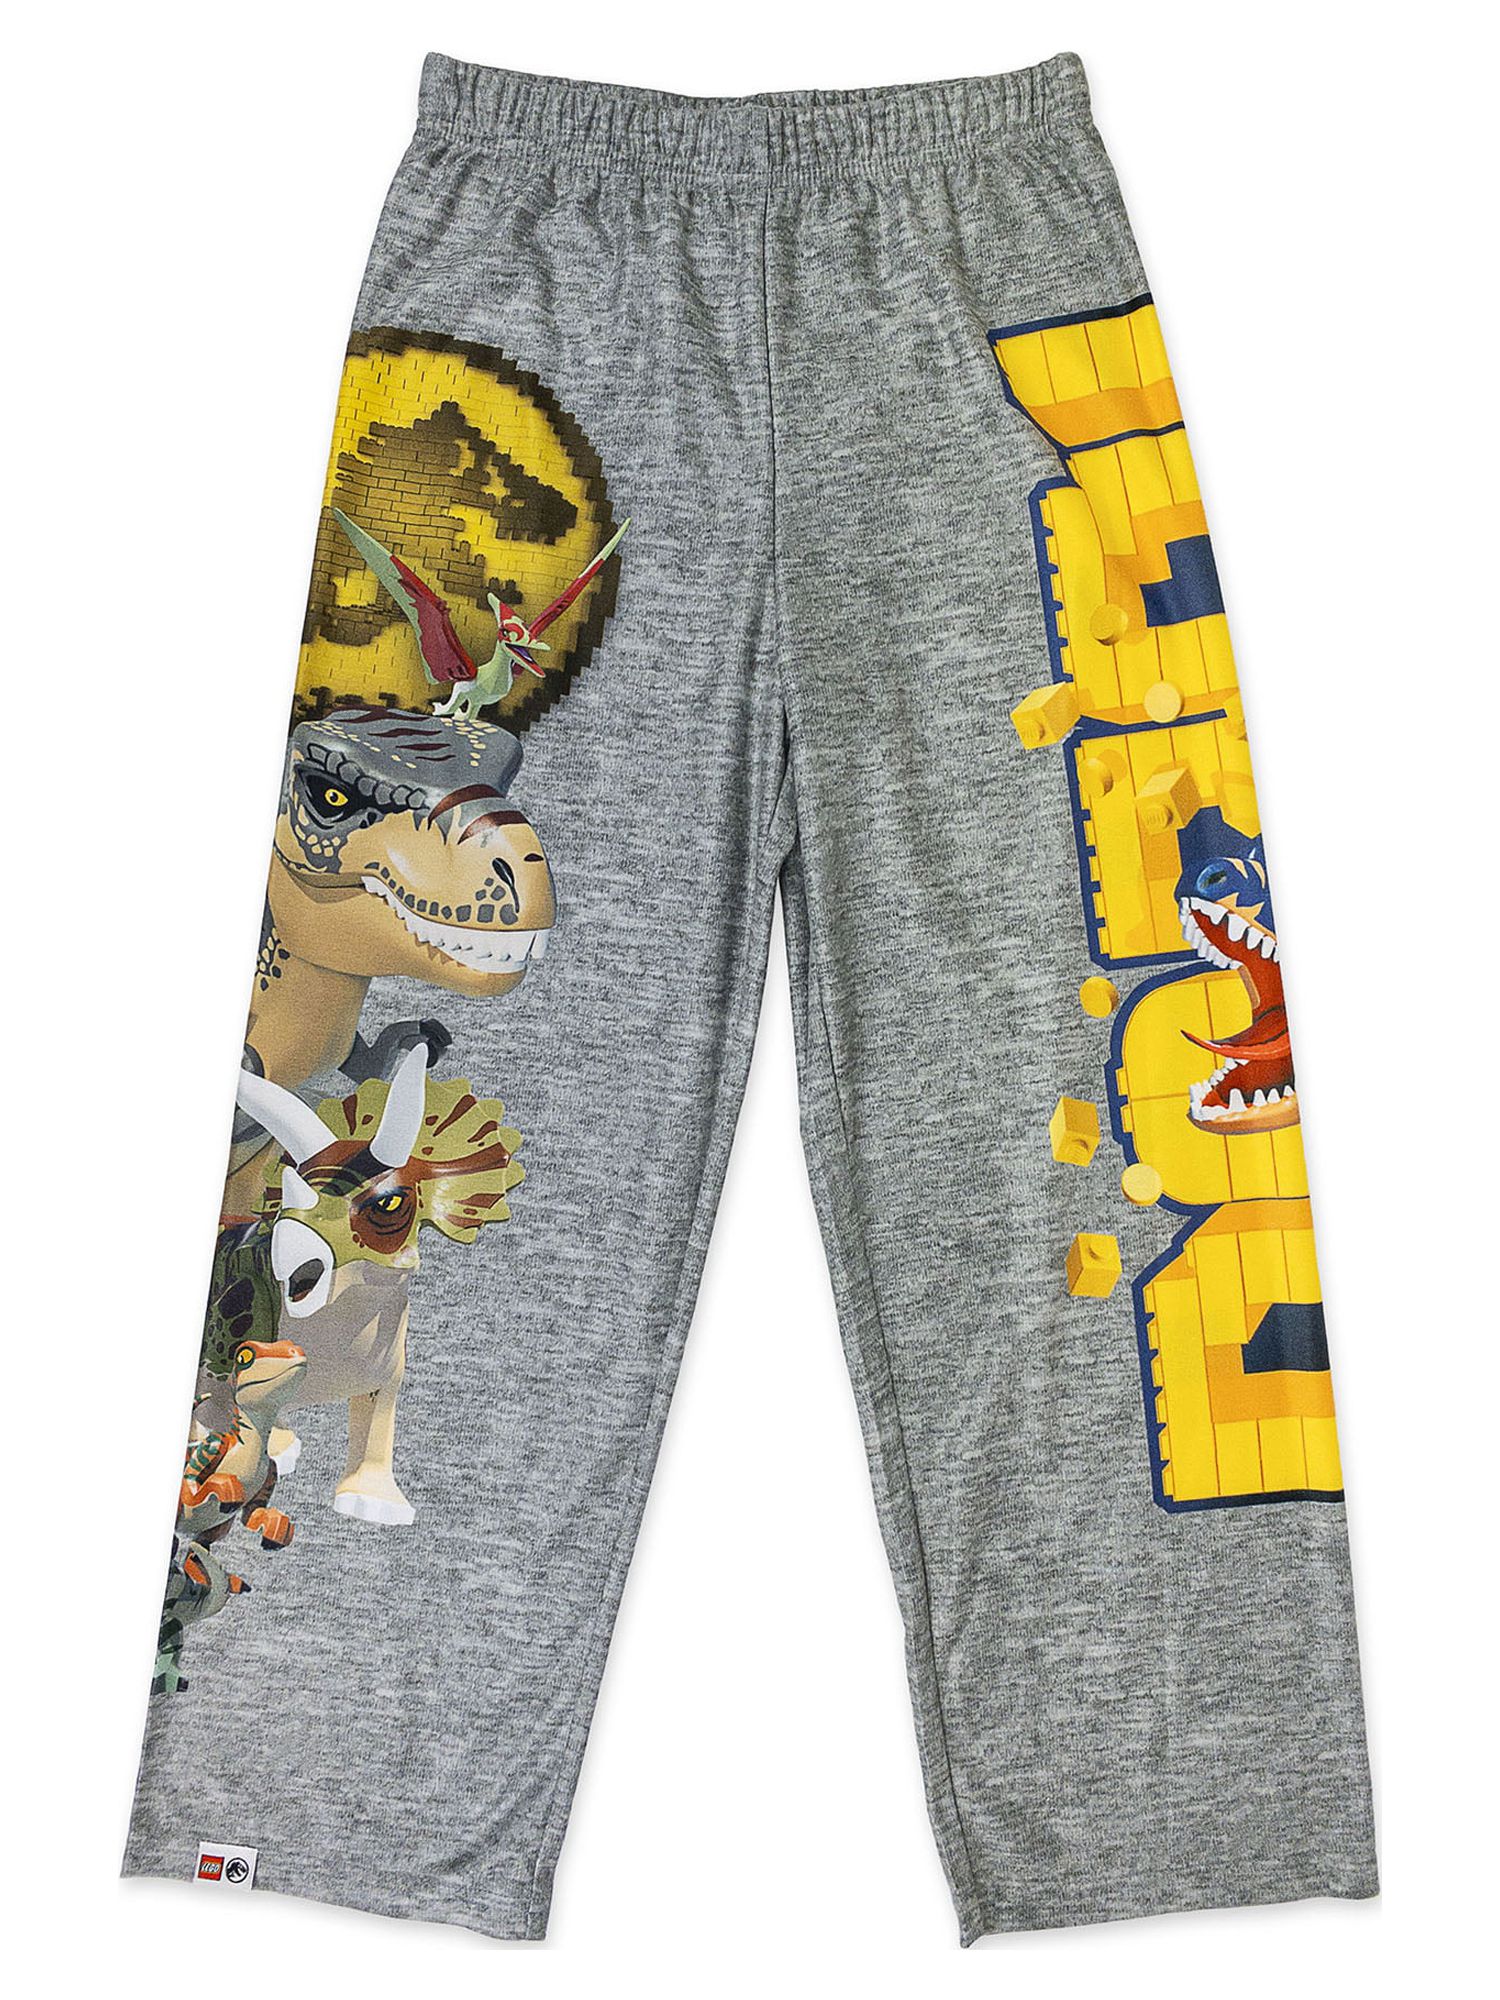 Lego Jurassic Boys Classic 2 Pack Lounge Pant Pajama, Sizes 4-12 - image 3 of 4